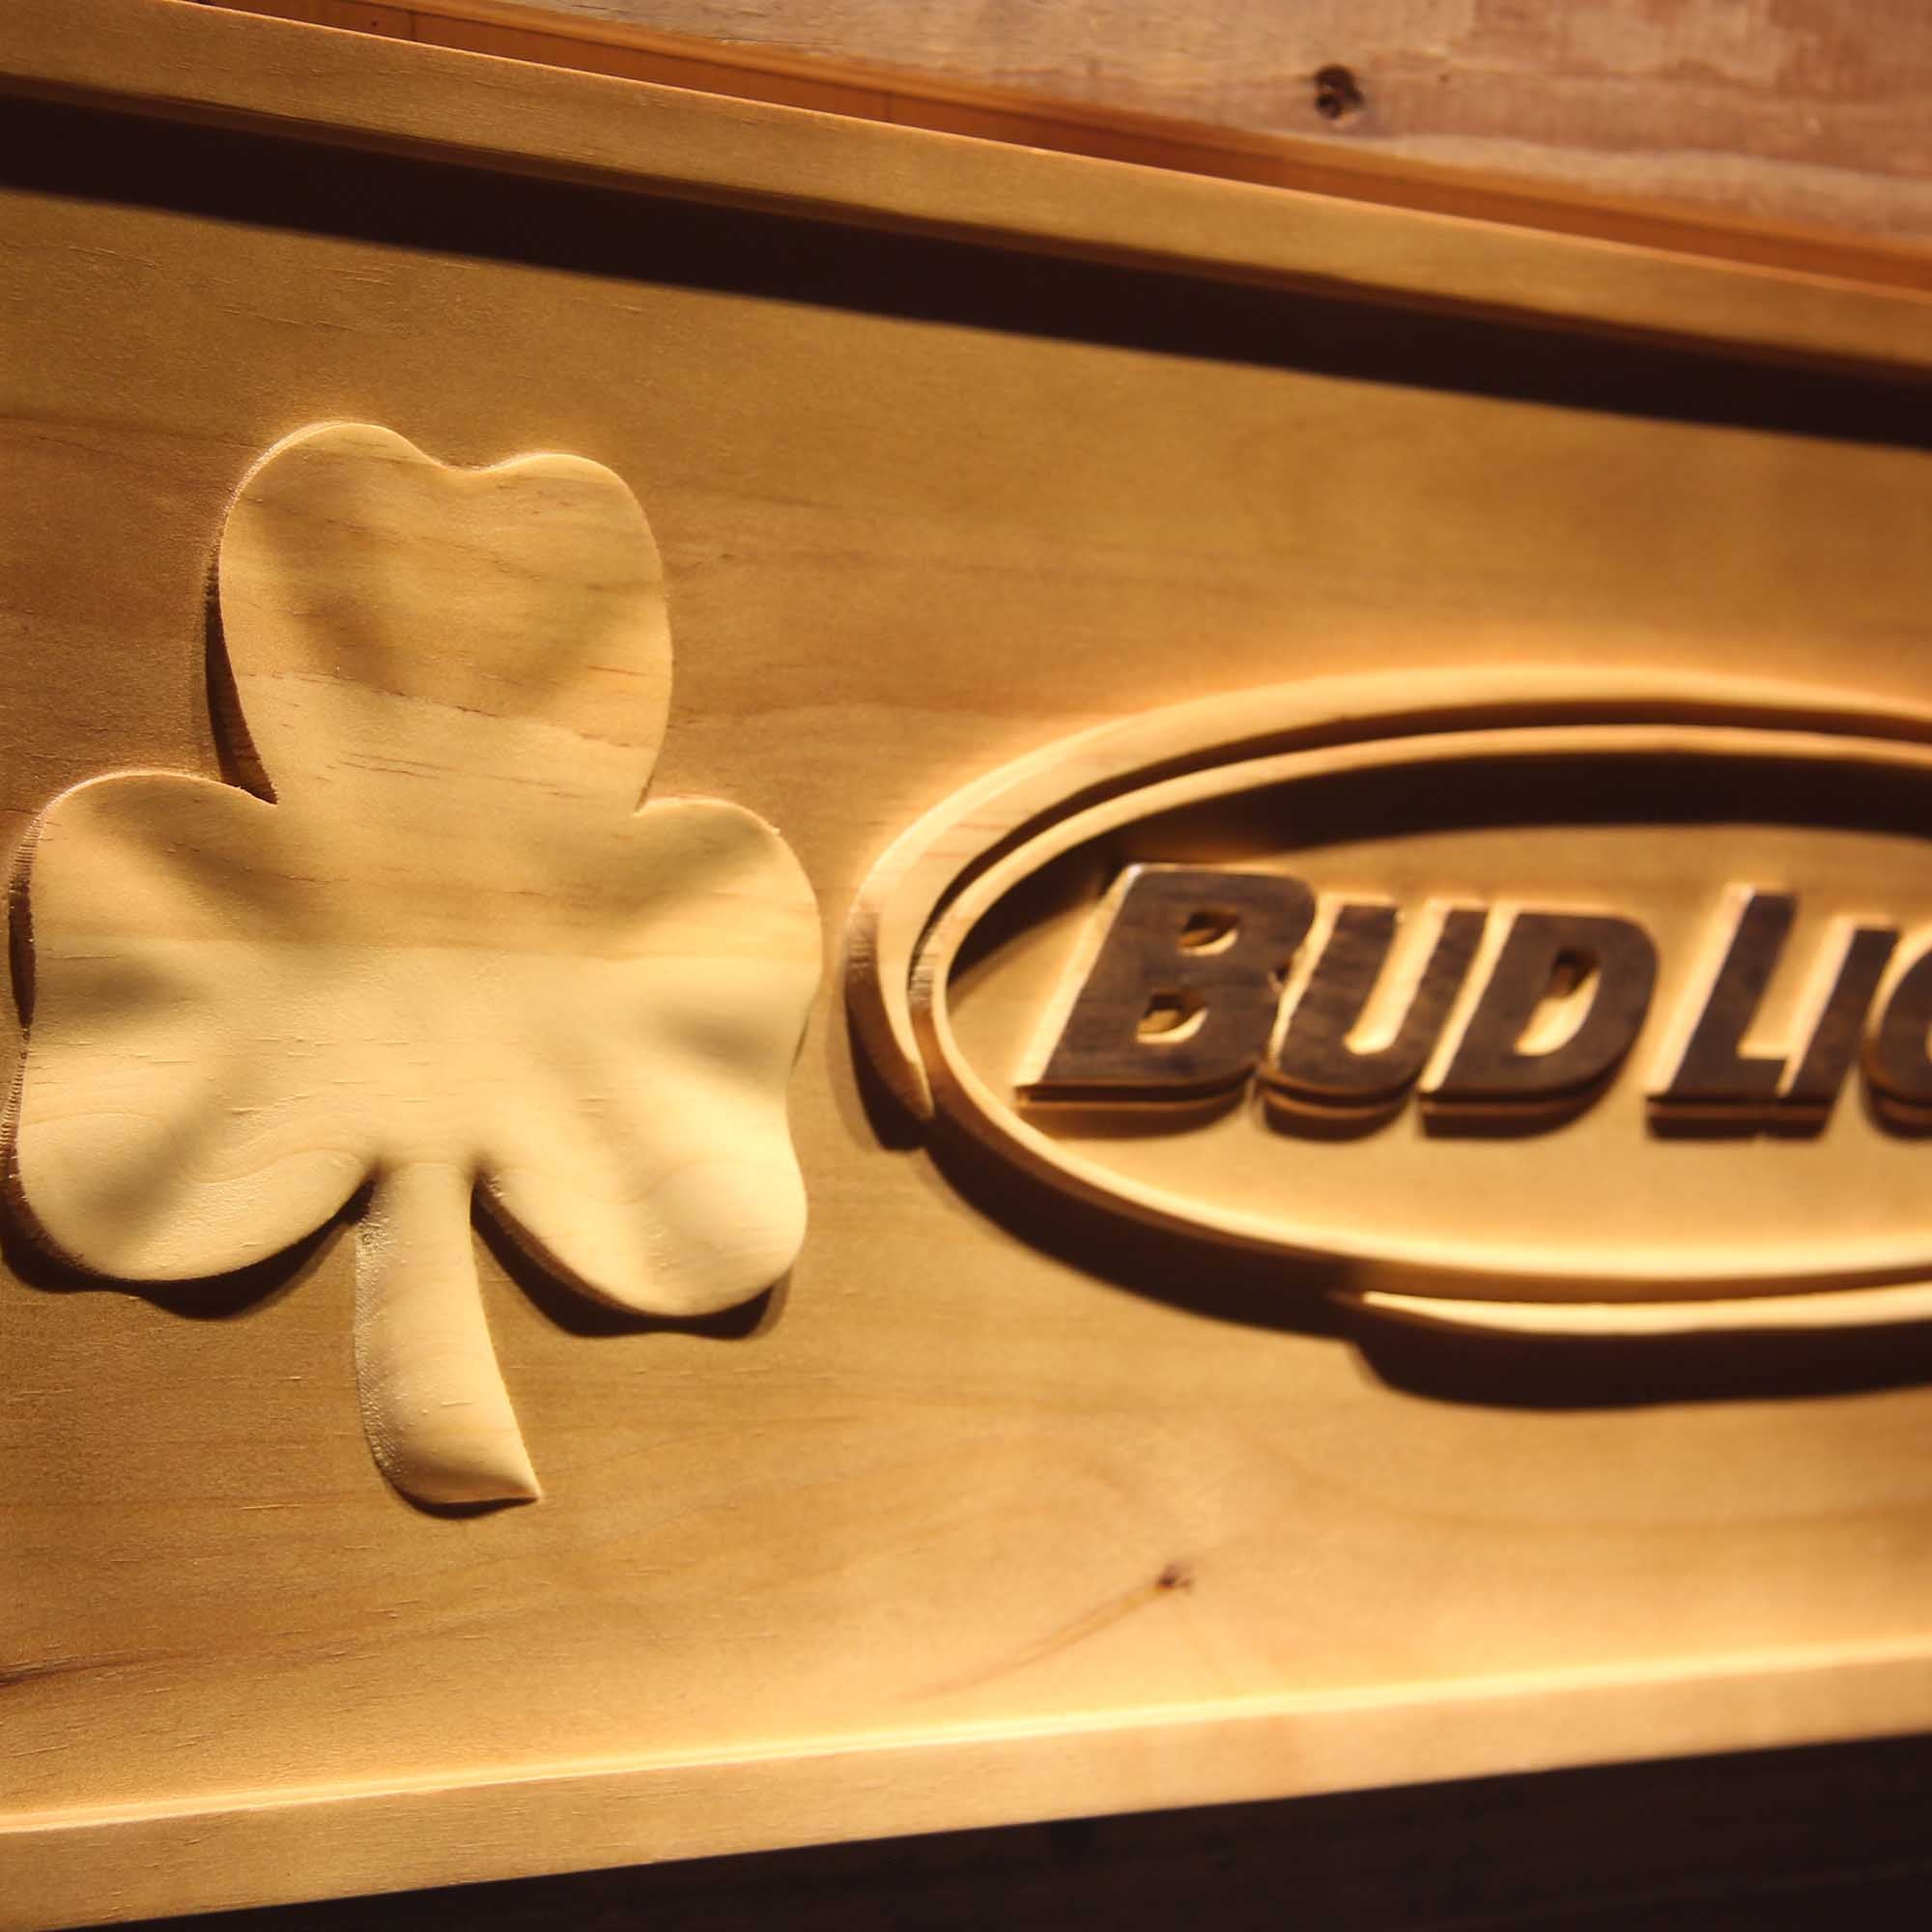 Bud Light Shamrock 3D Wooden Engrave Sign